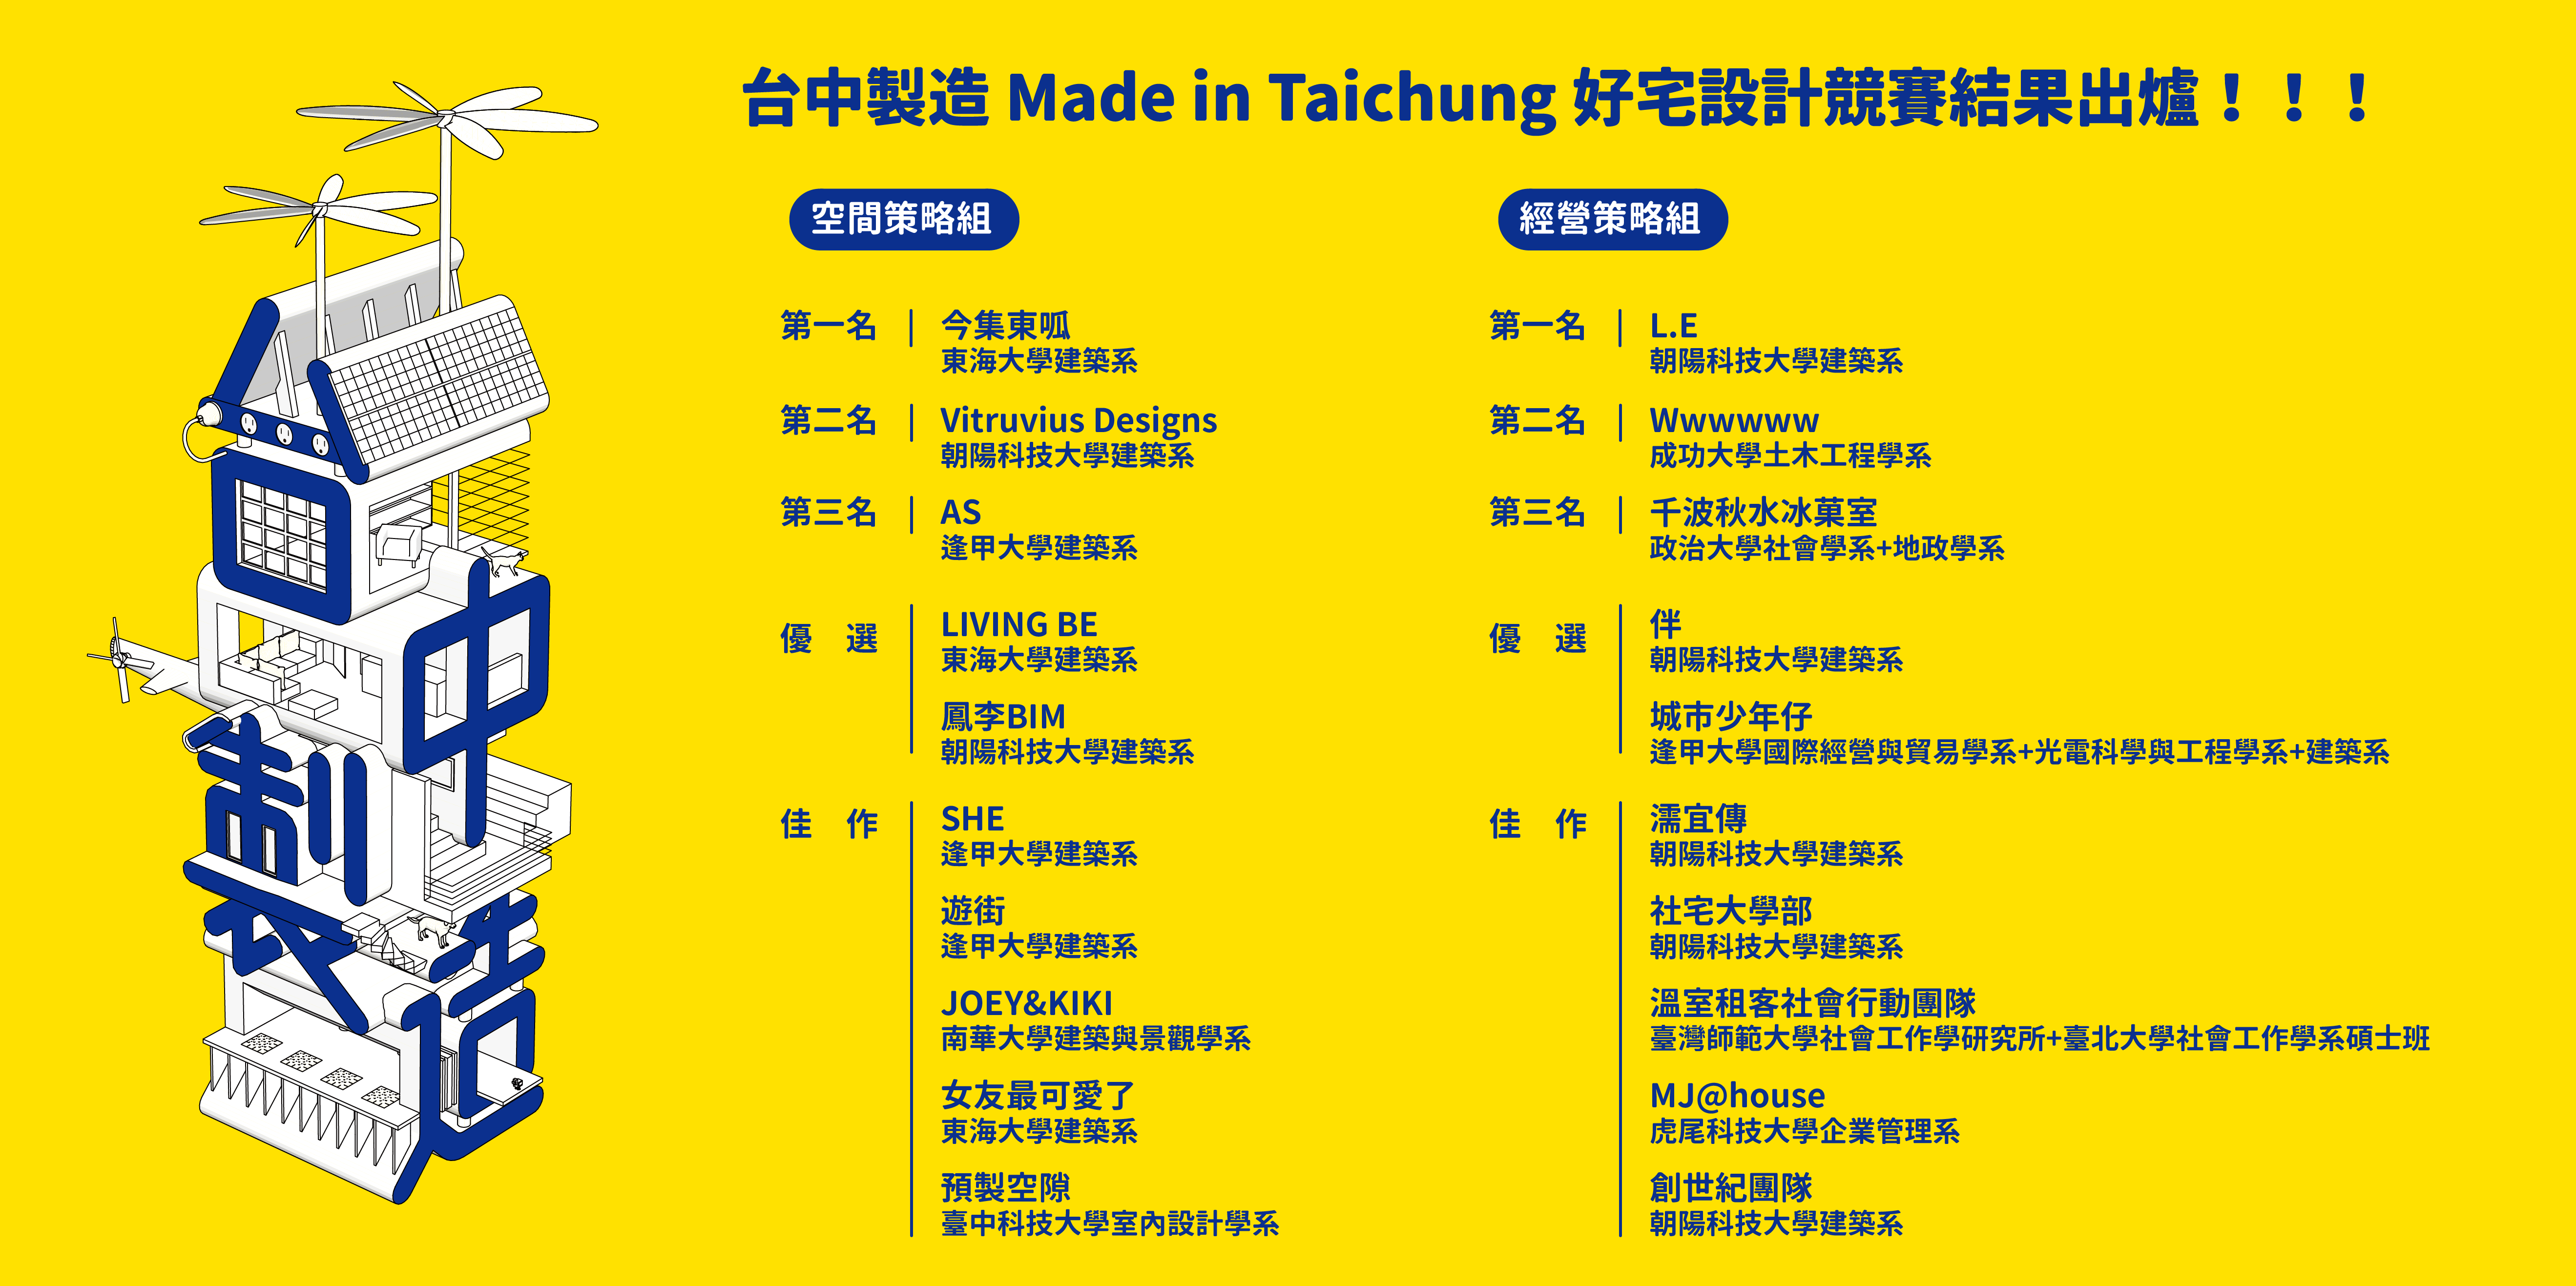 臺中製造 Made in Taichung 好宅設計競賽 得獎名單